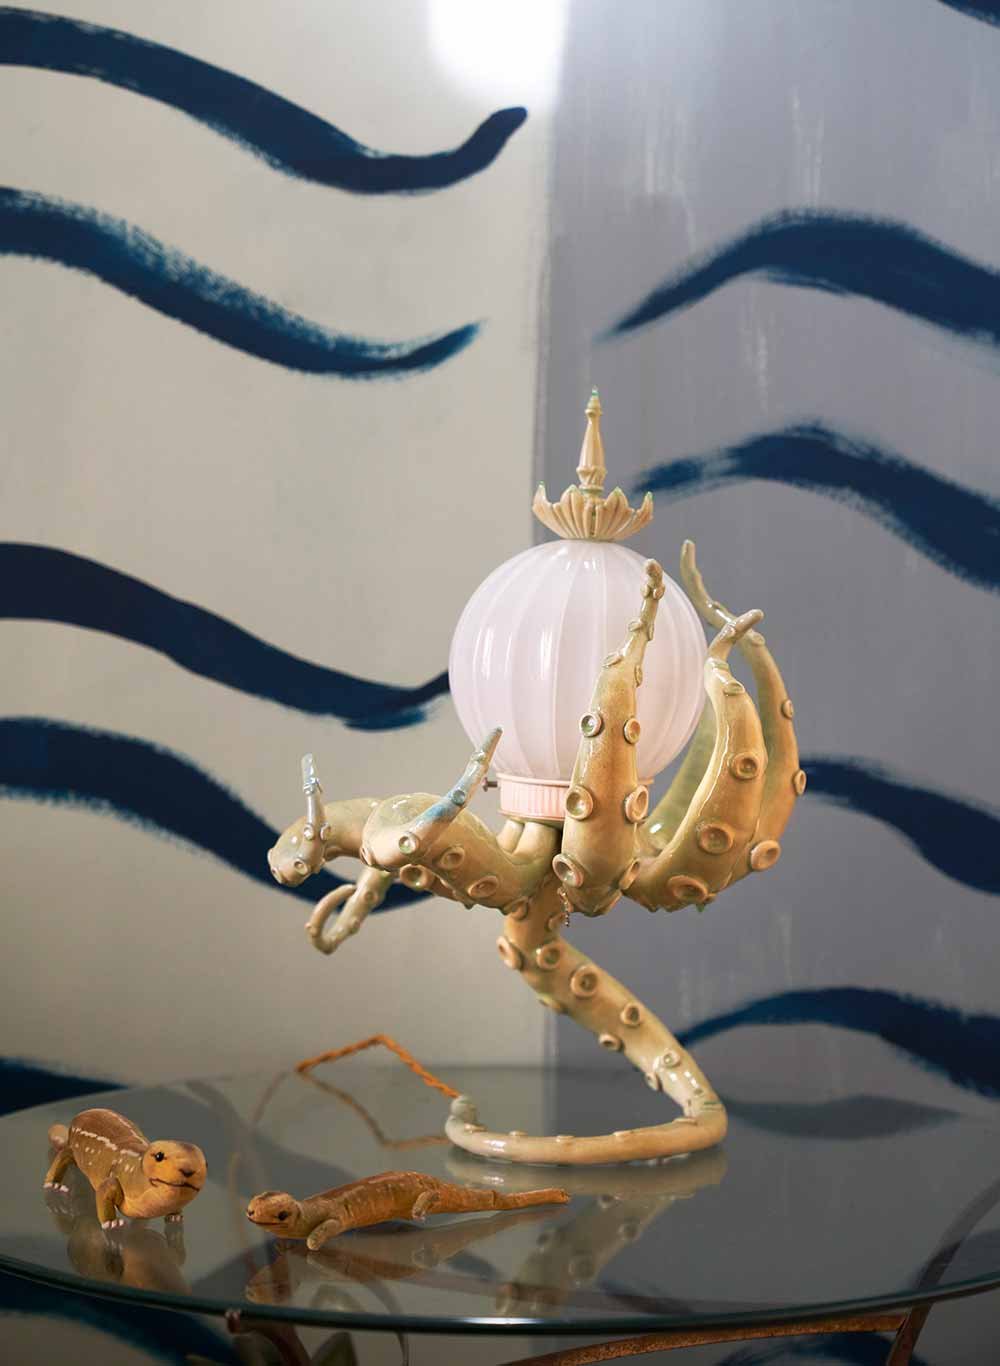 Leuchtkrake Diese exquisite Keramiklampe von Adam Wallacavage verfügt dank ihrer Tentakeloptik über einen hohen Wiedererkennungswert.